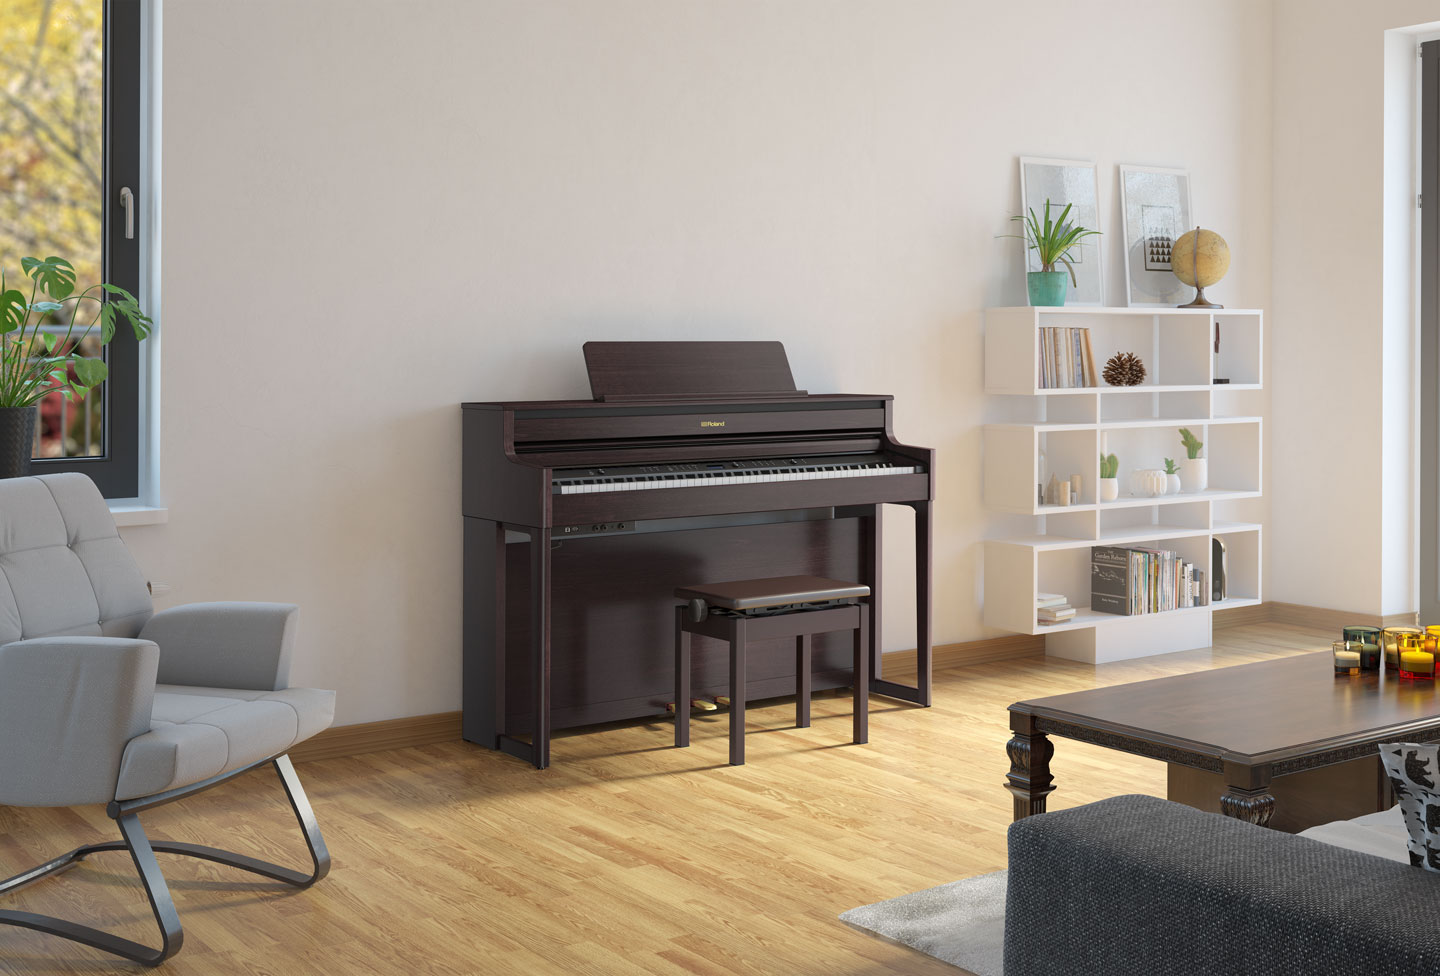 *ワンランク上のホームピアノを目指して。「HP700」シリーズ発売！！ ご好評いただいている上位モデル、LXシリーズのデザインを受け継いだ「HP700」シリーズ。ピアノを弾くことで生活に彩りを与える、そんなホームピアノを目指して作られました。 *HP700シリーズのここをチェック！ **①音・サウン […]